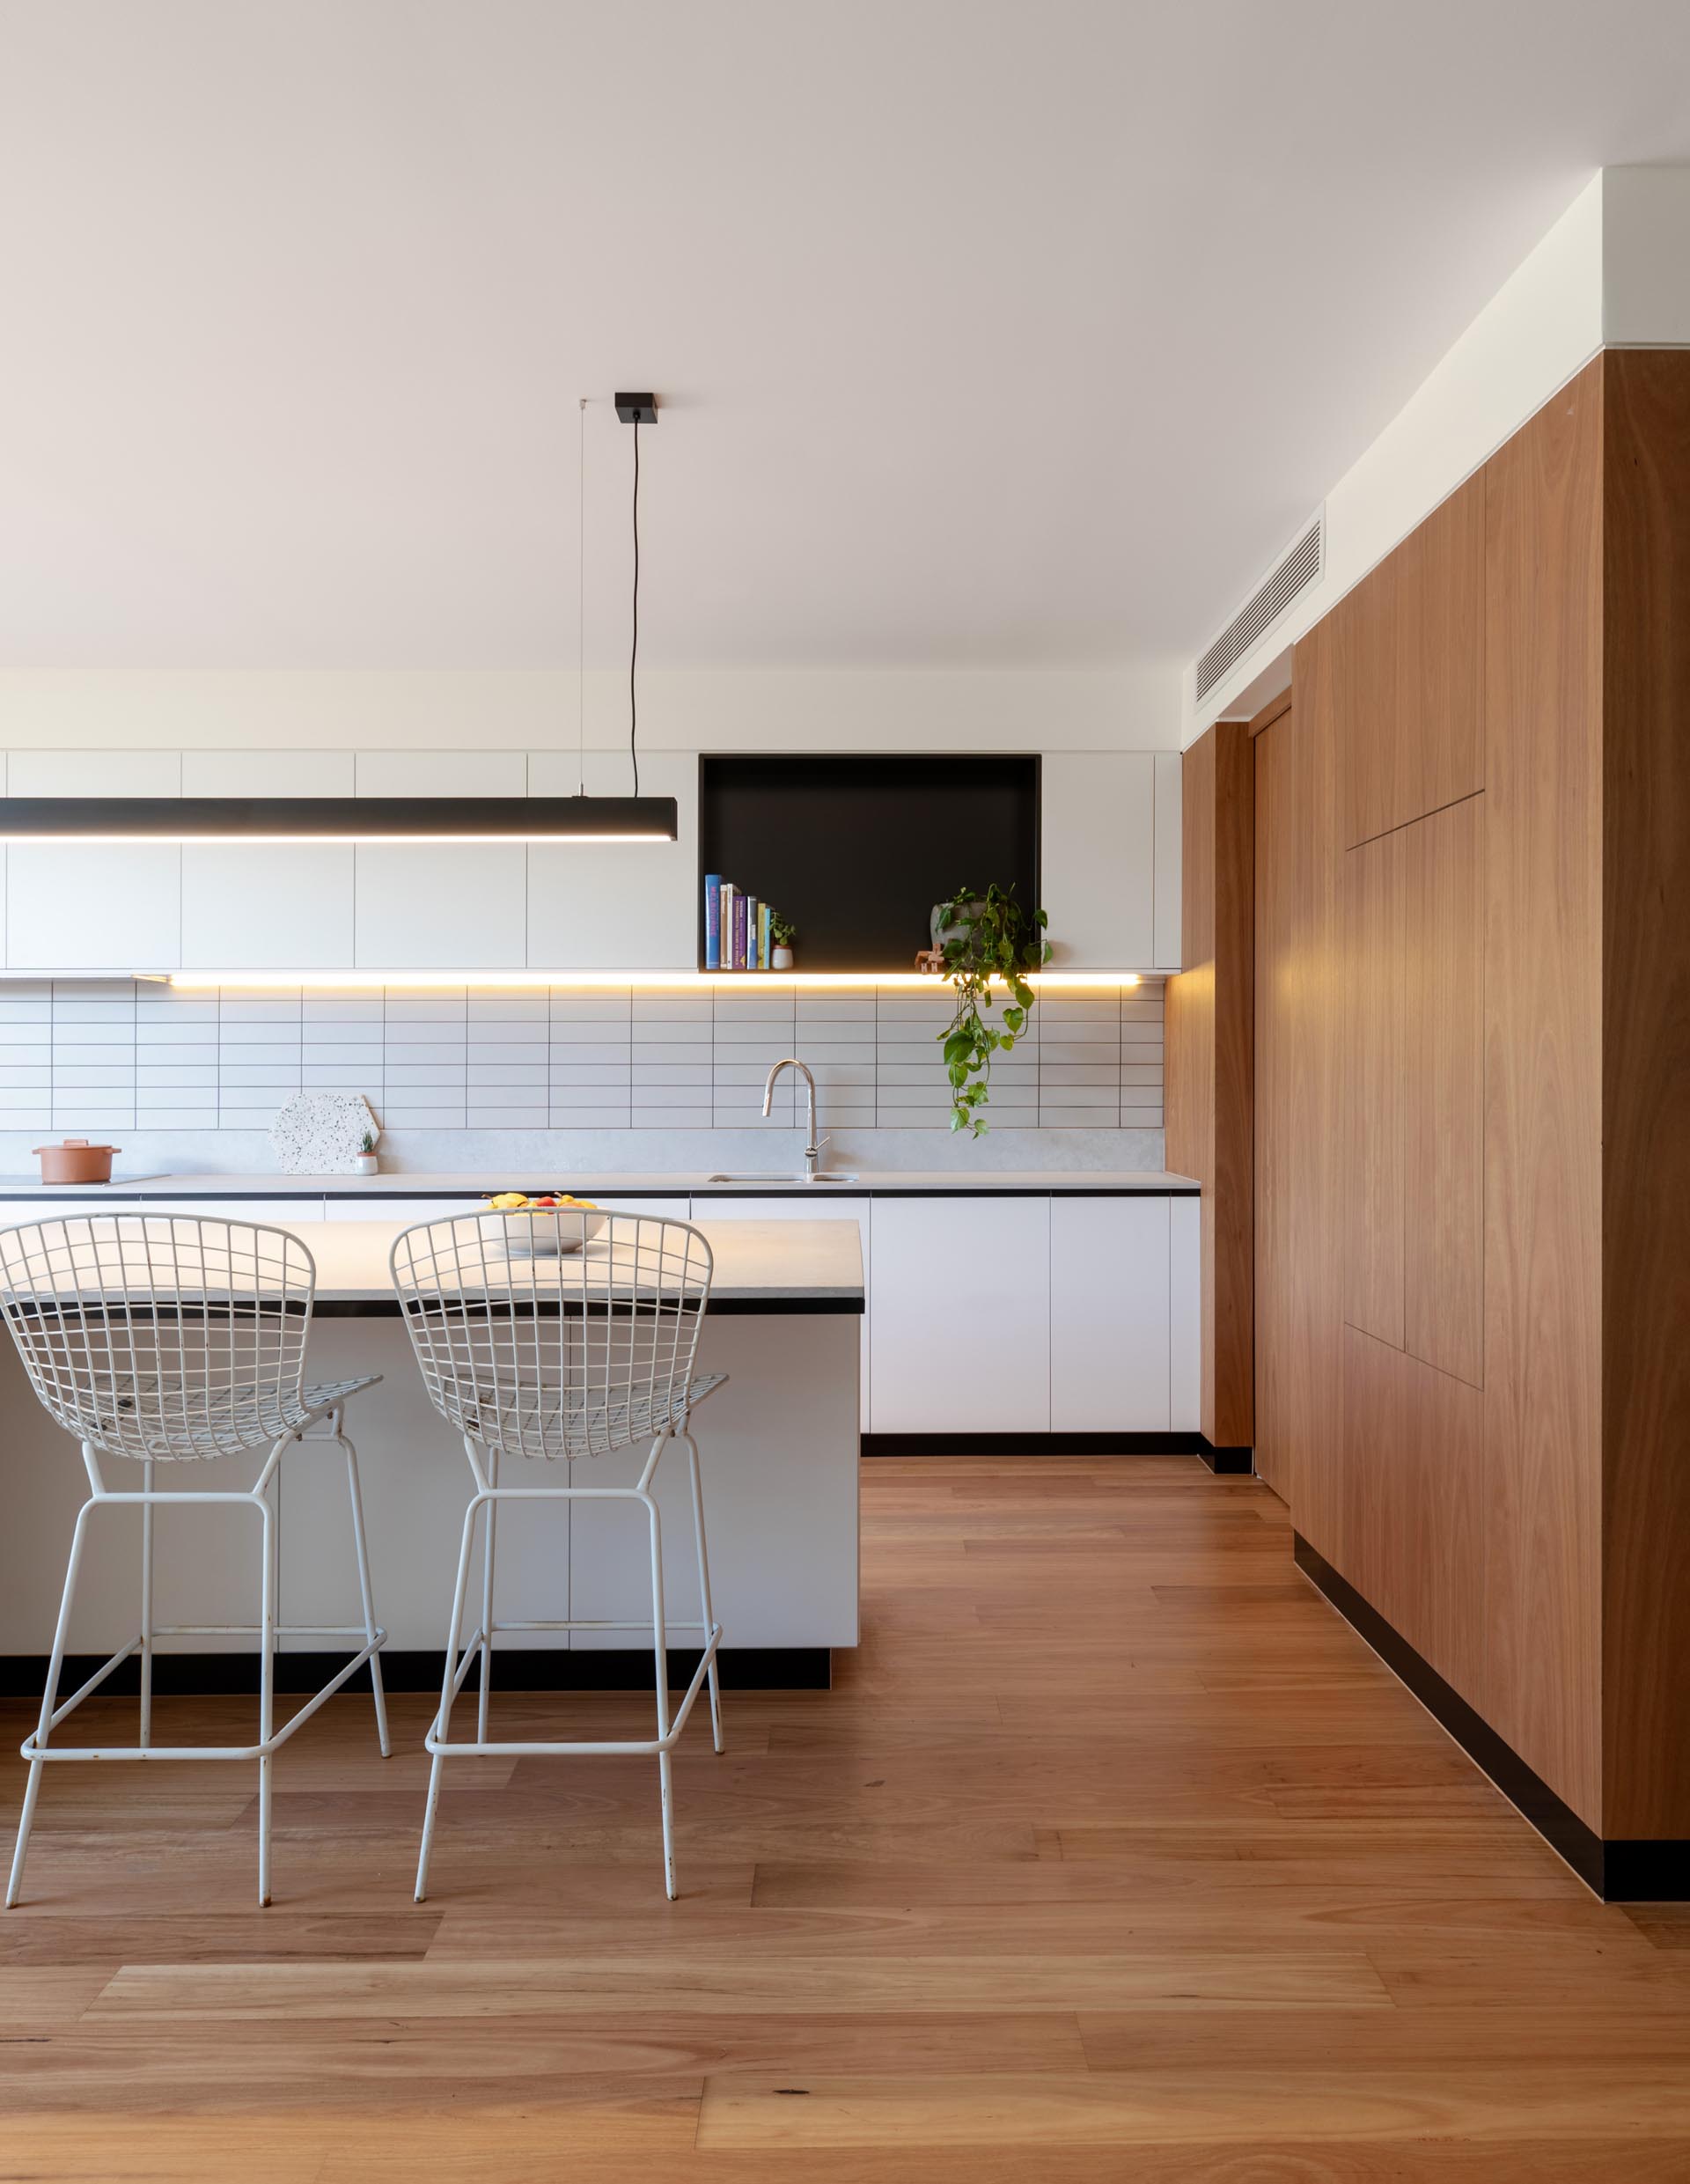 Современная кухня включает минималистские белые шкафы, черную акцентную полку, большой остров с местом для сидения и нижнее освещение.